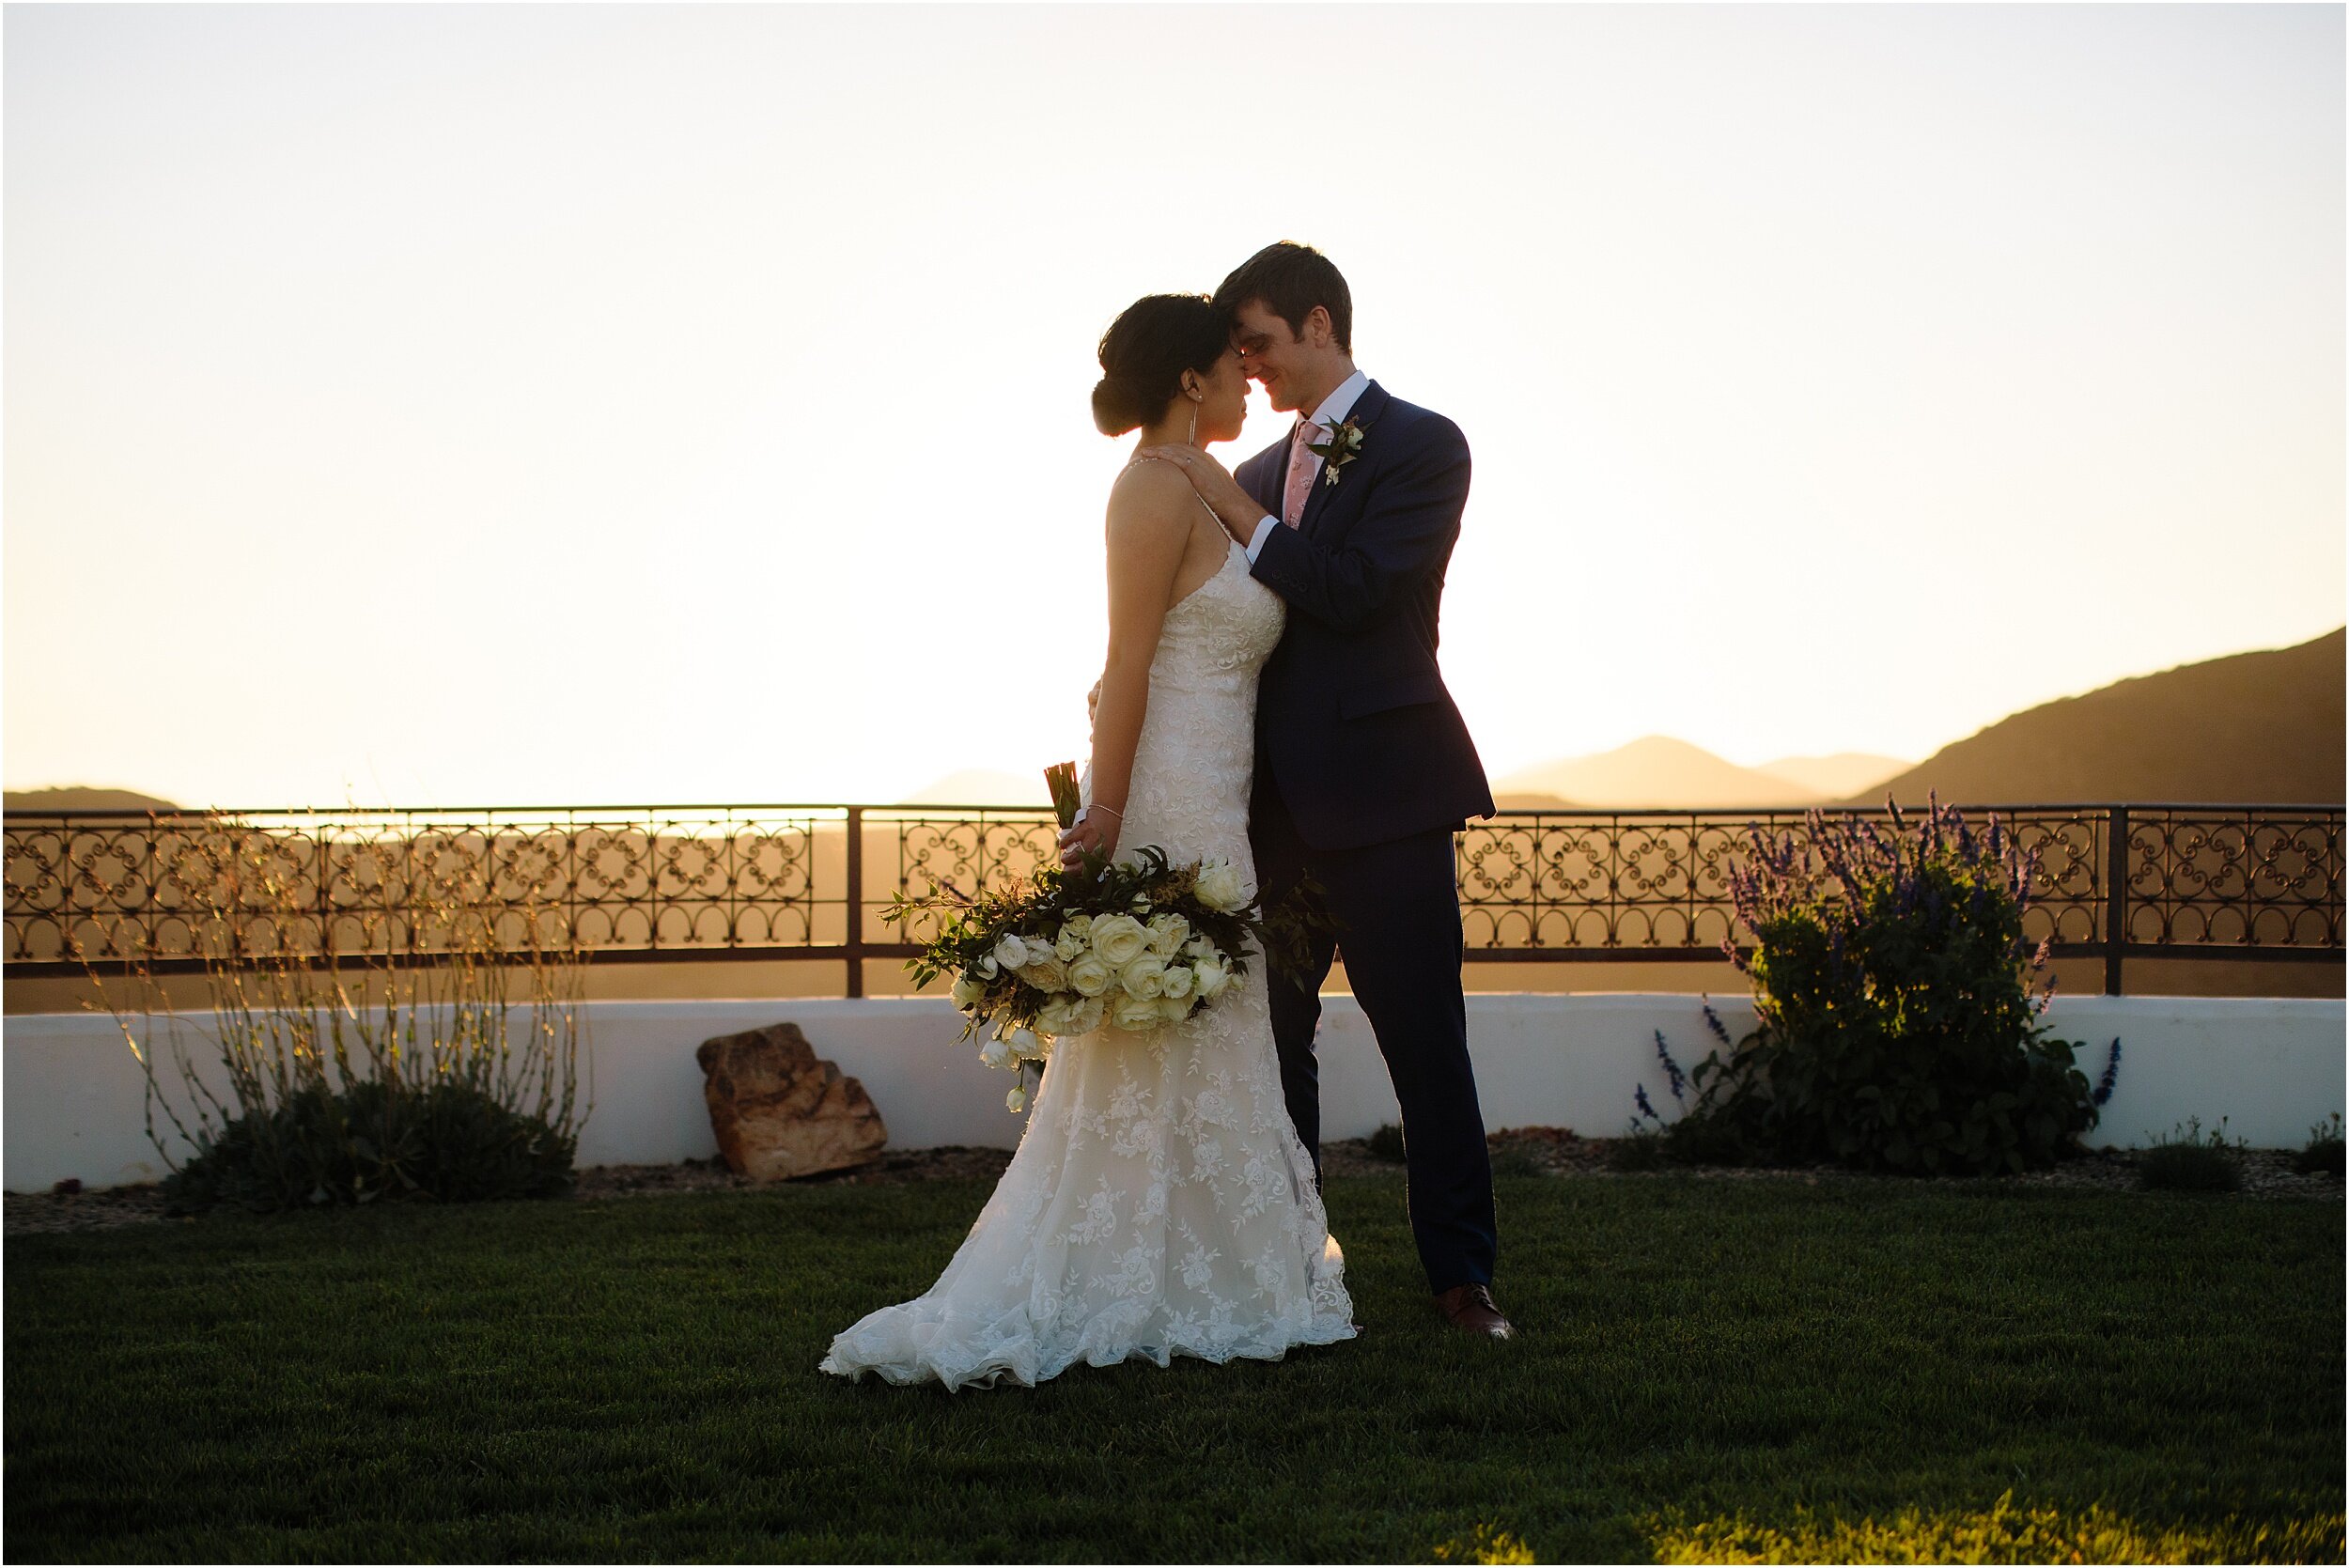 Amy and Jeff | Small Malibu Wedding | Malibu Elopement Photographer_0047.jpg